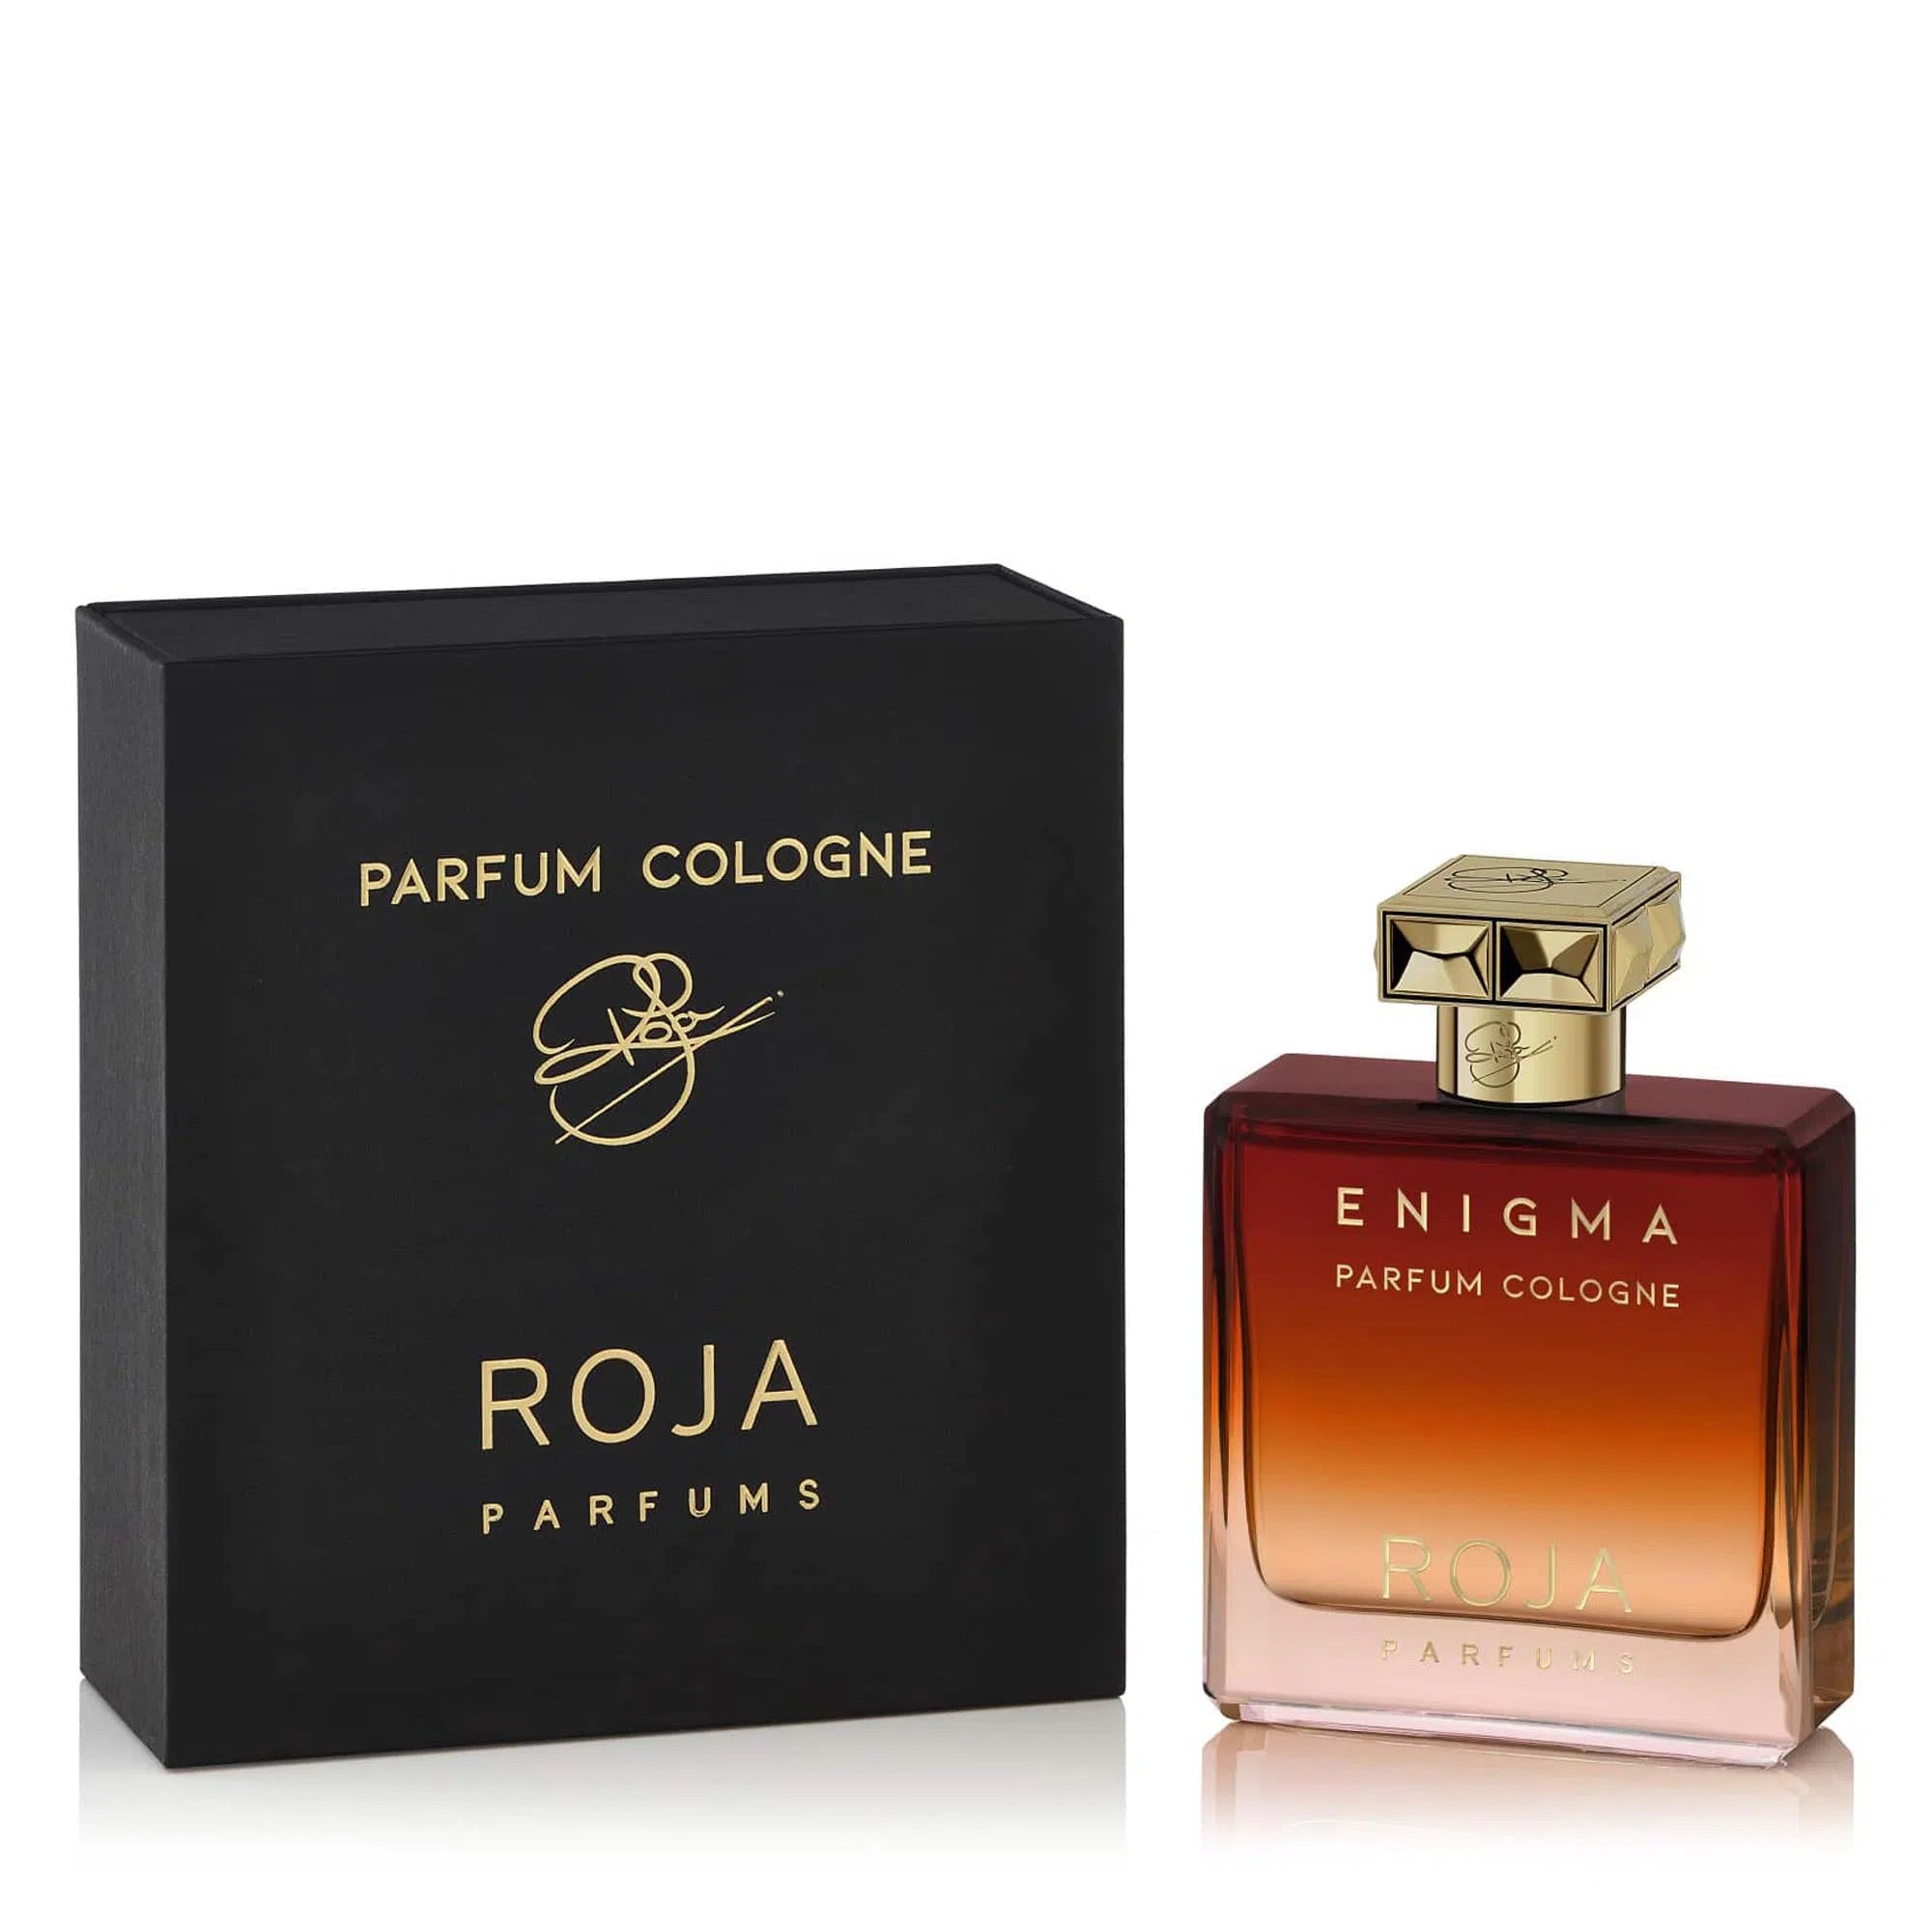 Perfume Roja Parfums Enigma Parfum Cologne (U) / 100 ml - 5060370916955- Prive Perfumes Honduras